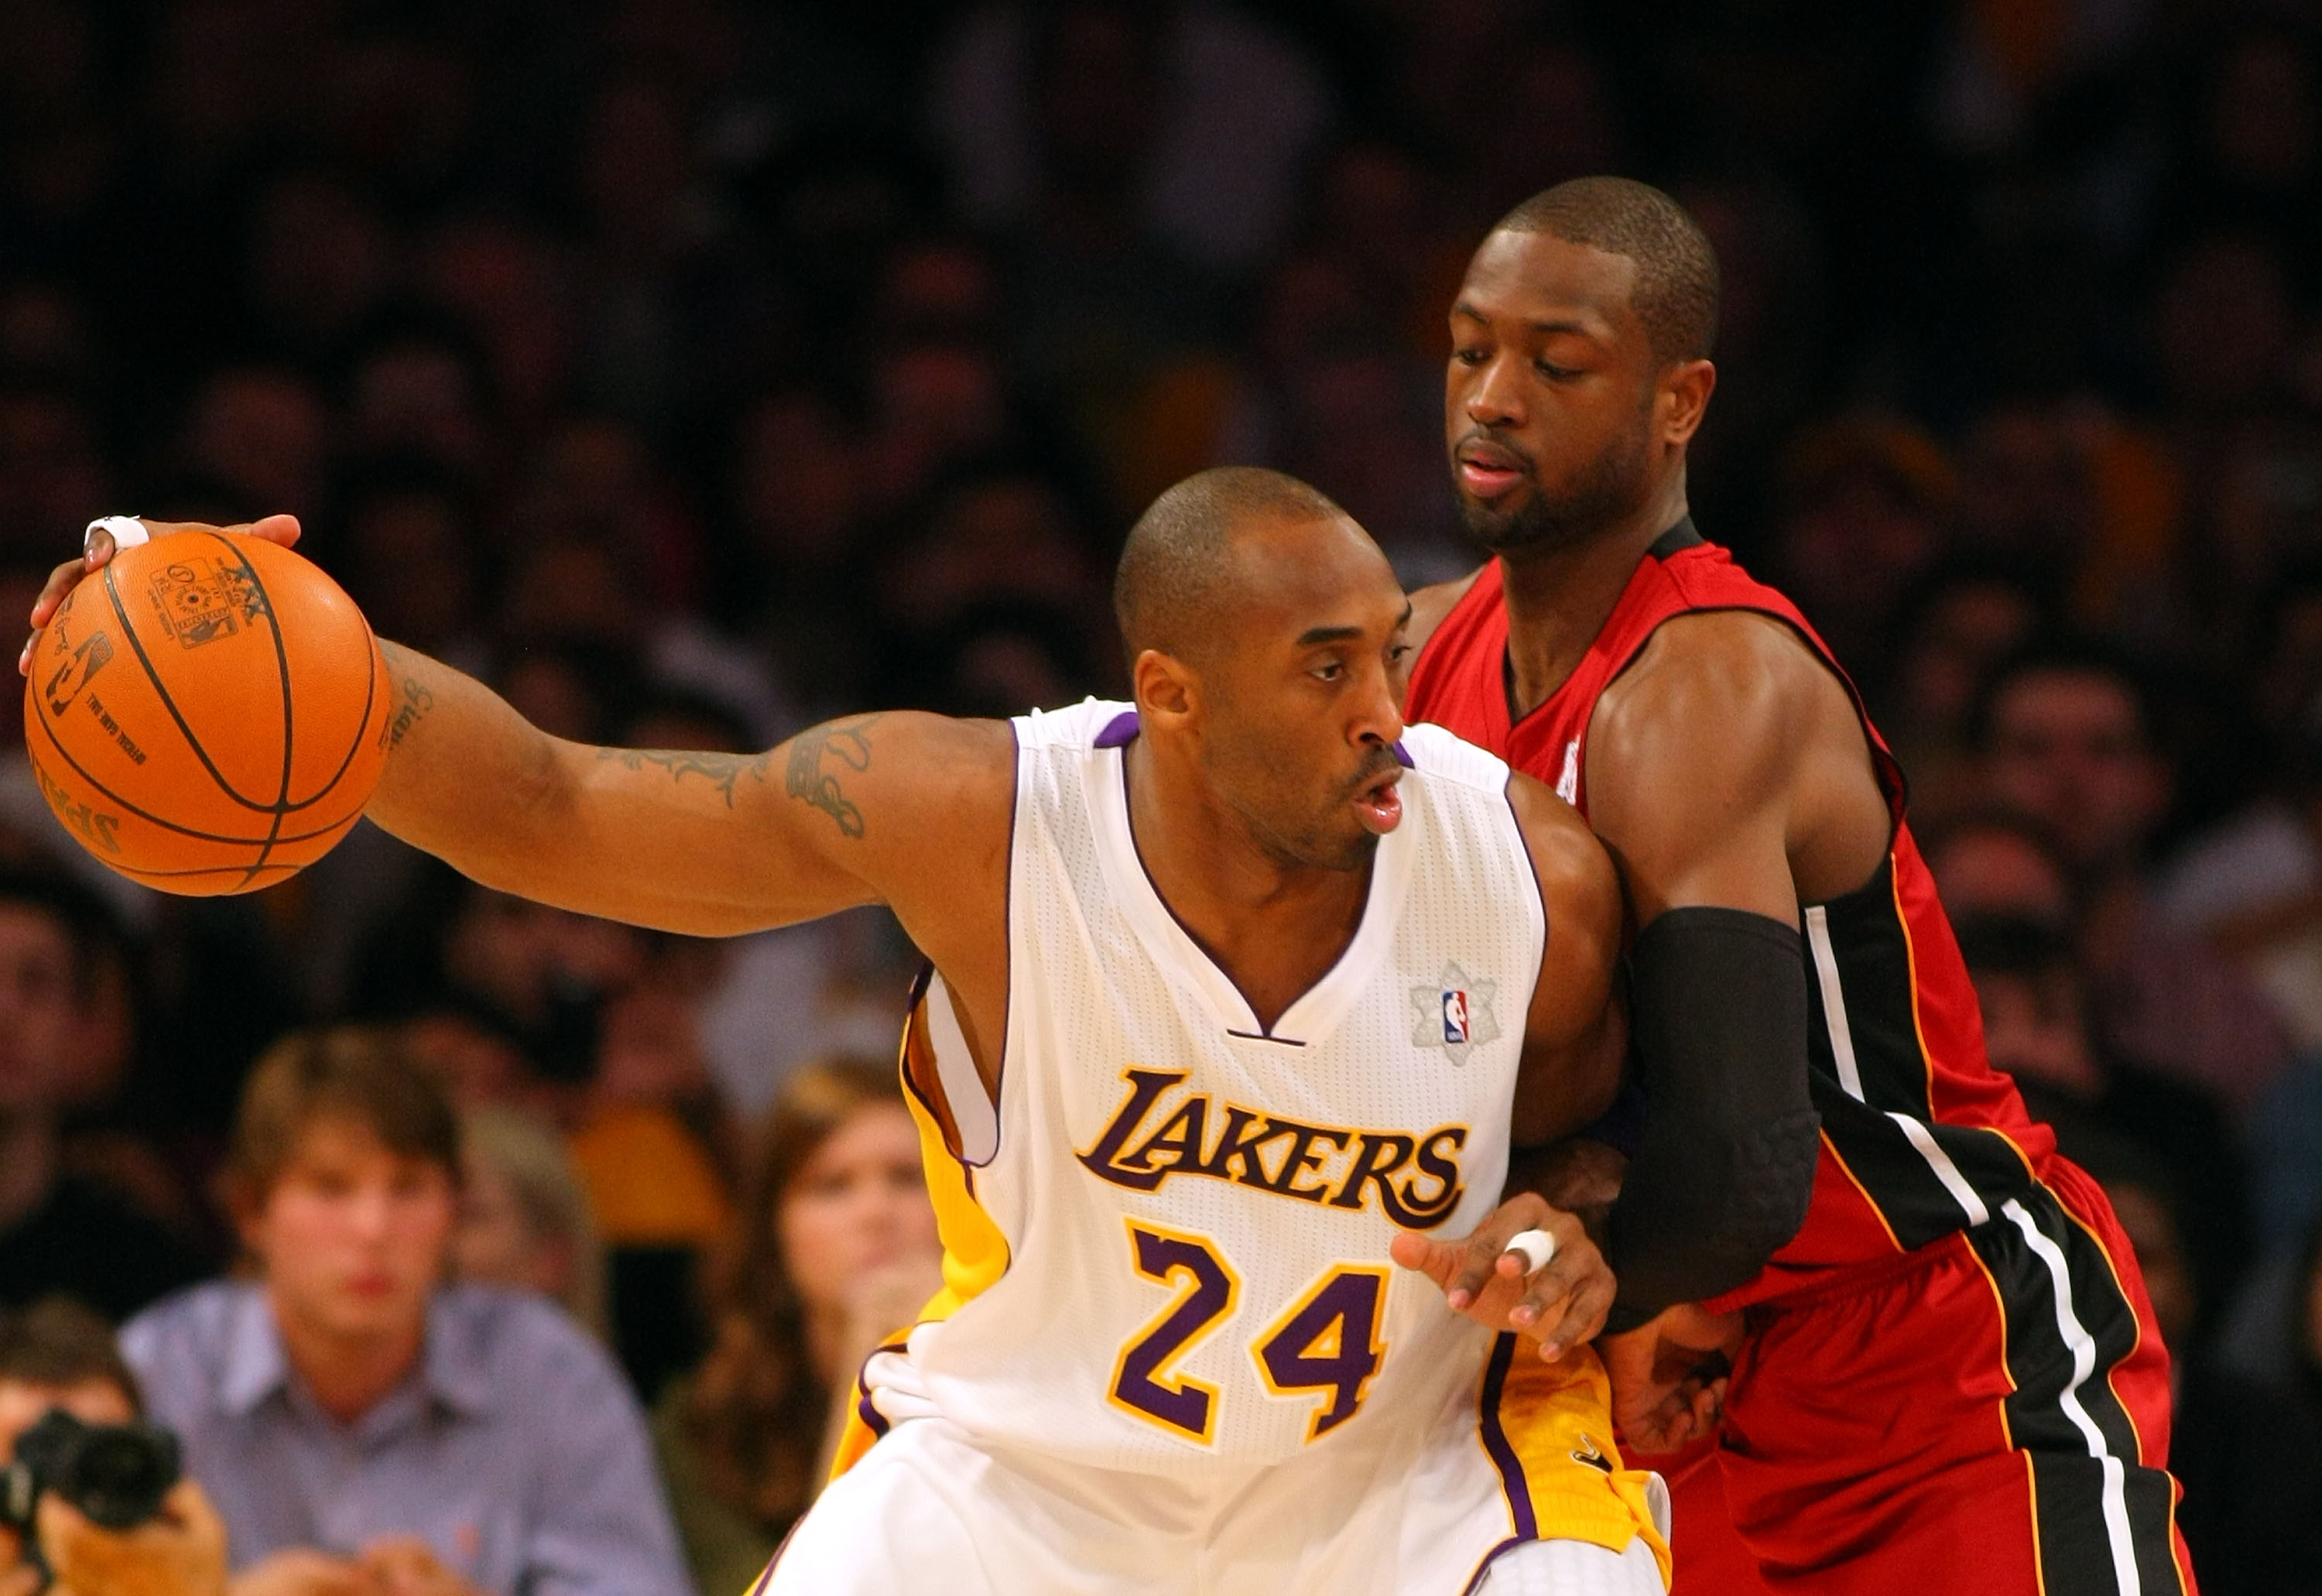 NBA rumors: Momentum building for retiring Kobe Bryant's uniform